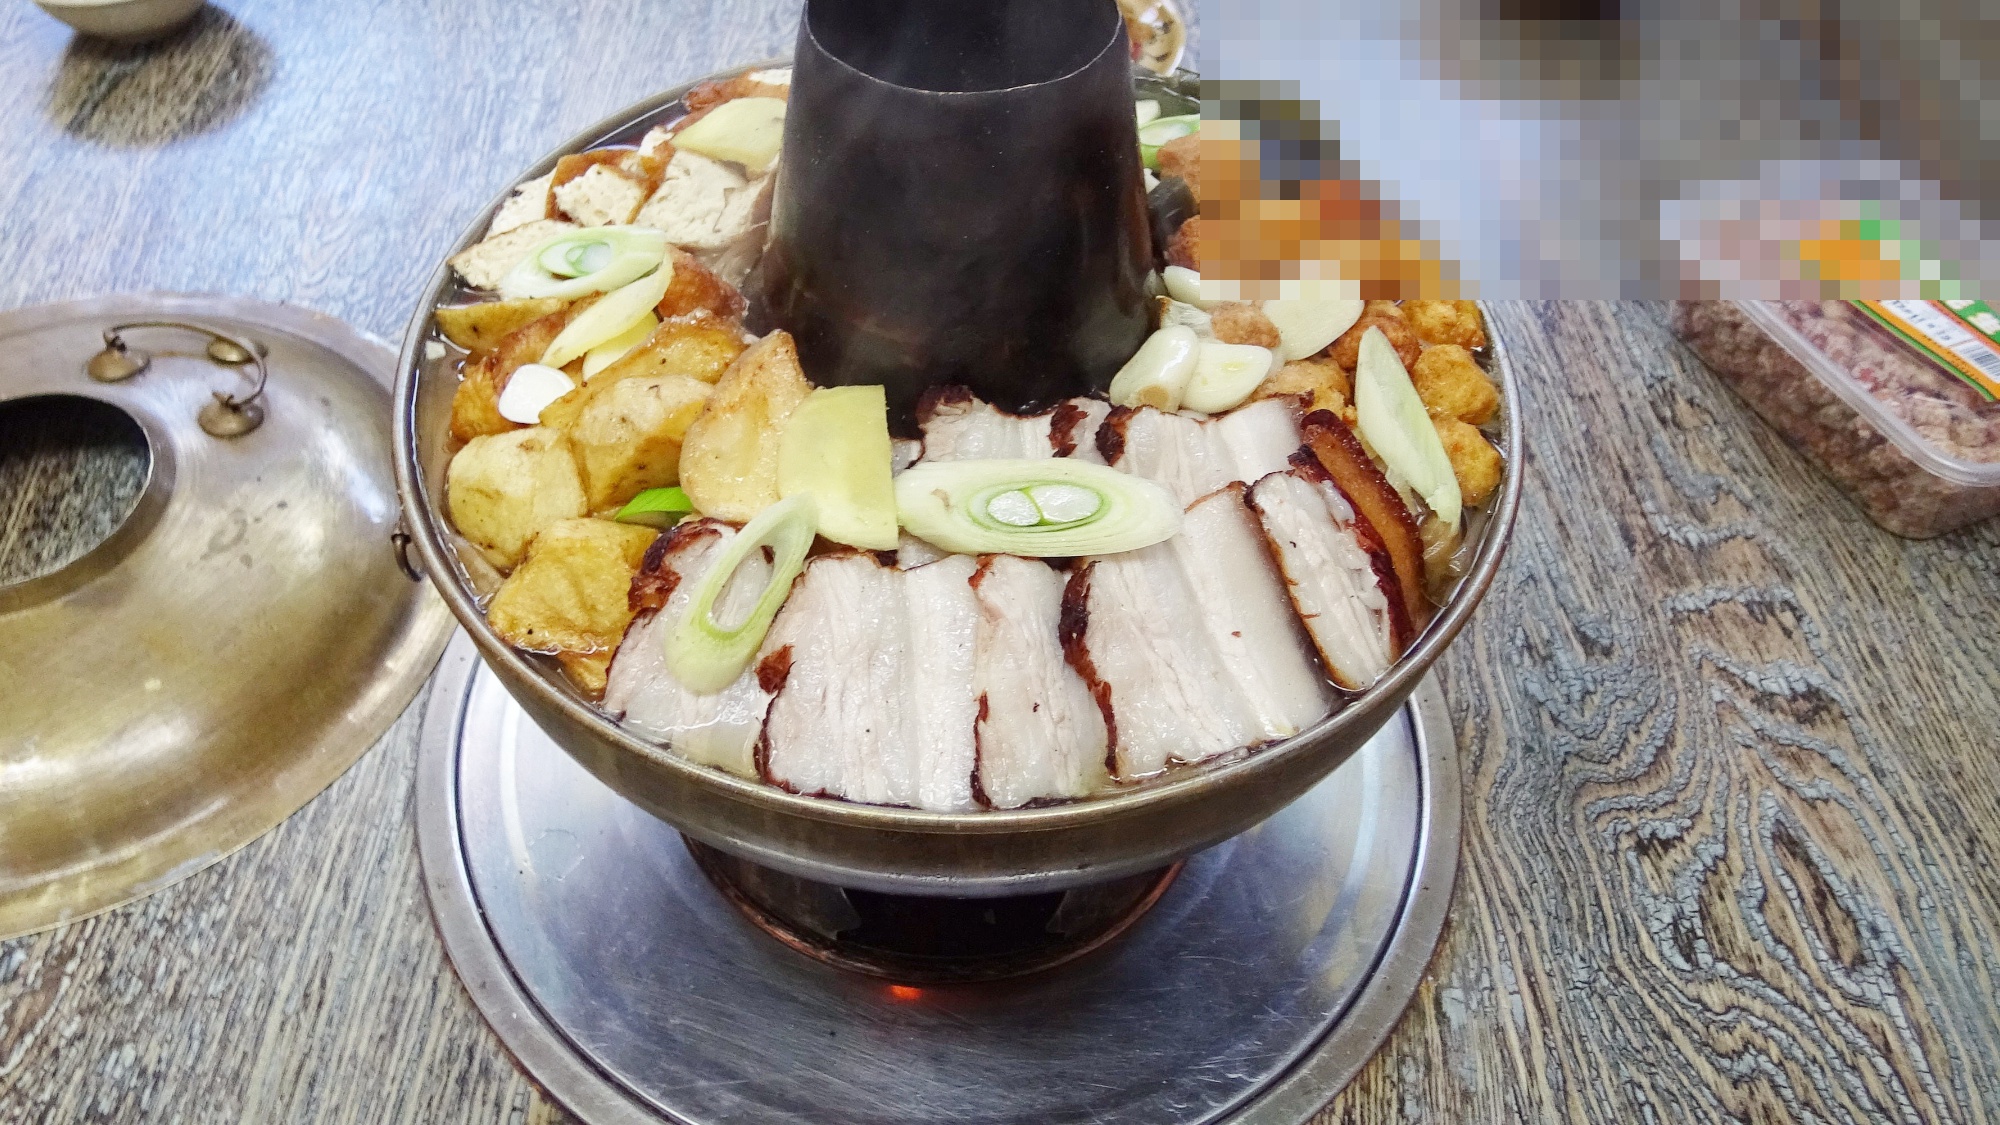 视频:这才是农村地道的铜火锅吃法,冬天来一锅,真过瘾!